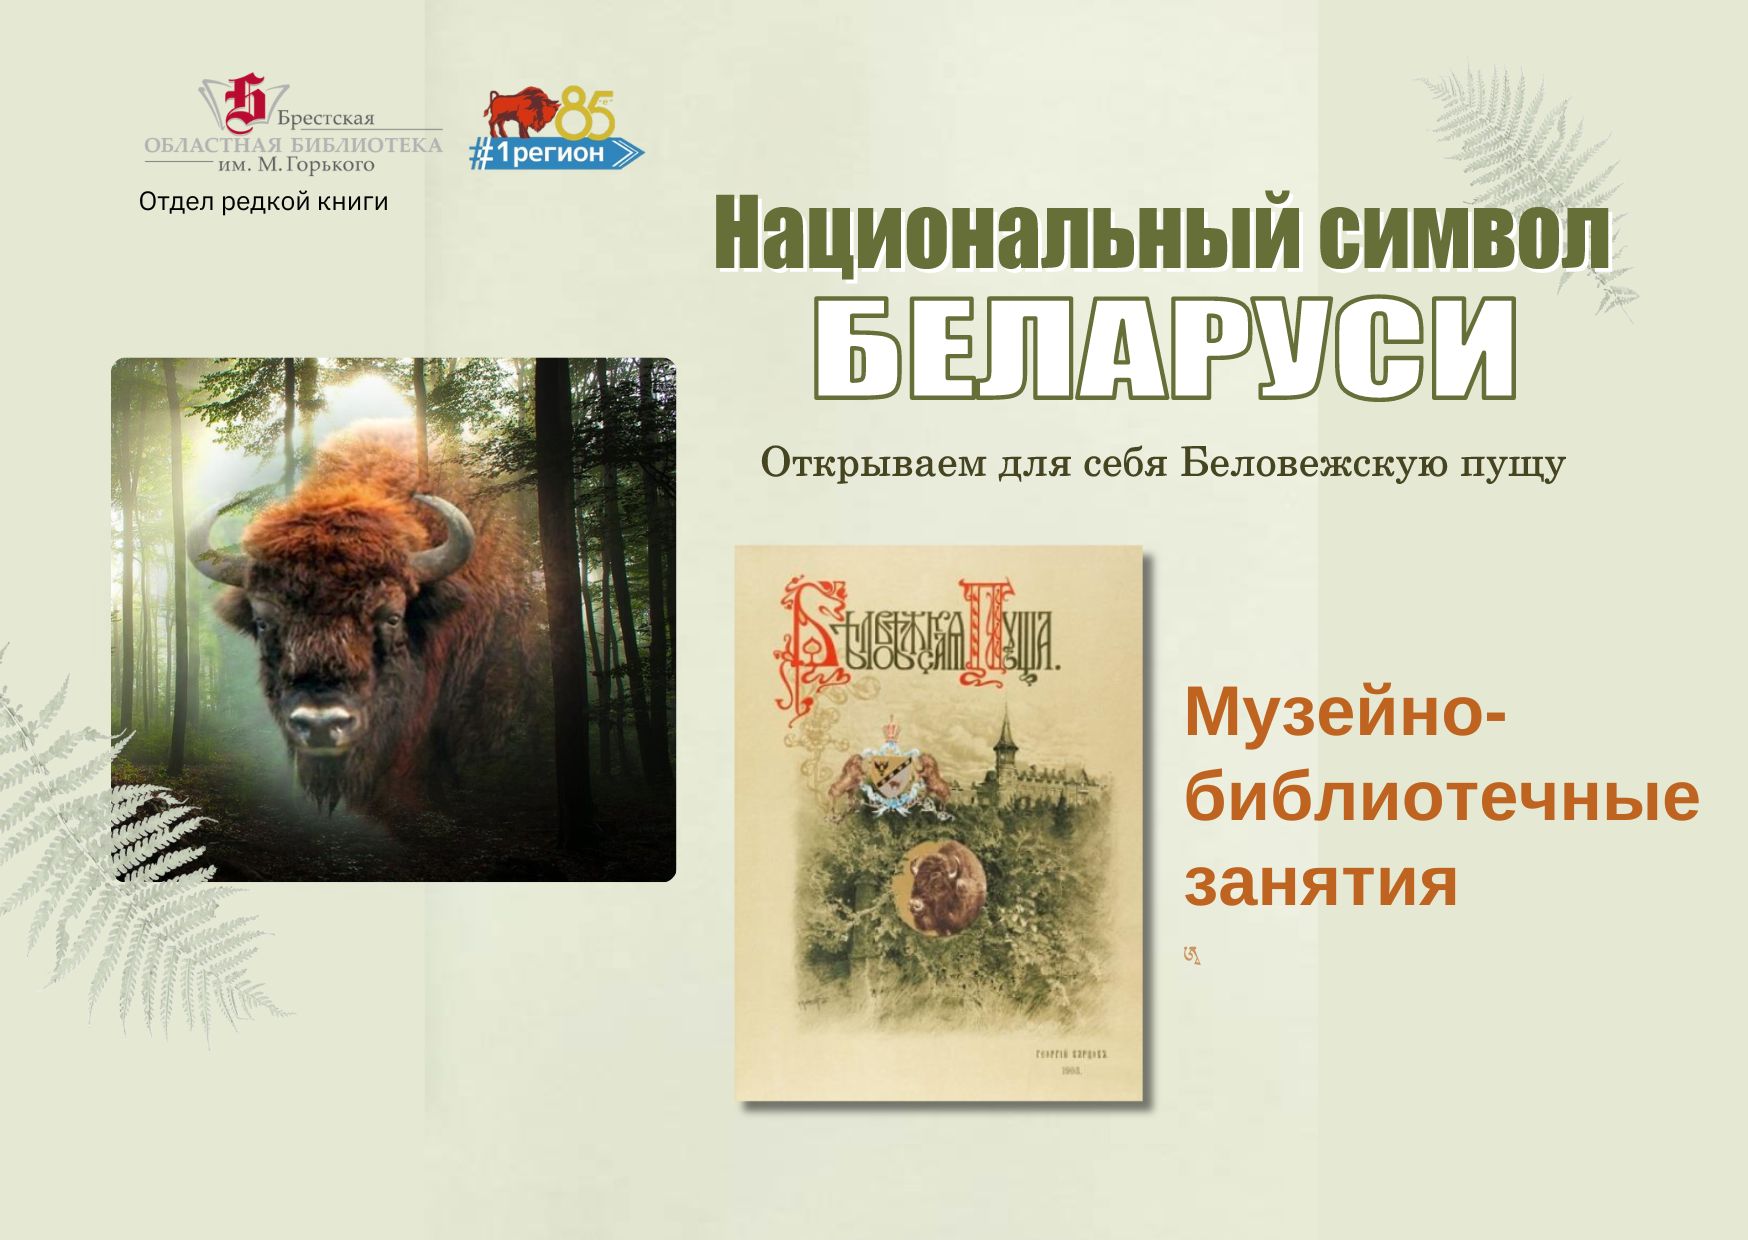 Музейно-библиотечное занятие «Национальный символ Беларуси: открываем для себя Беловежскую пущу»